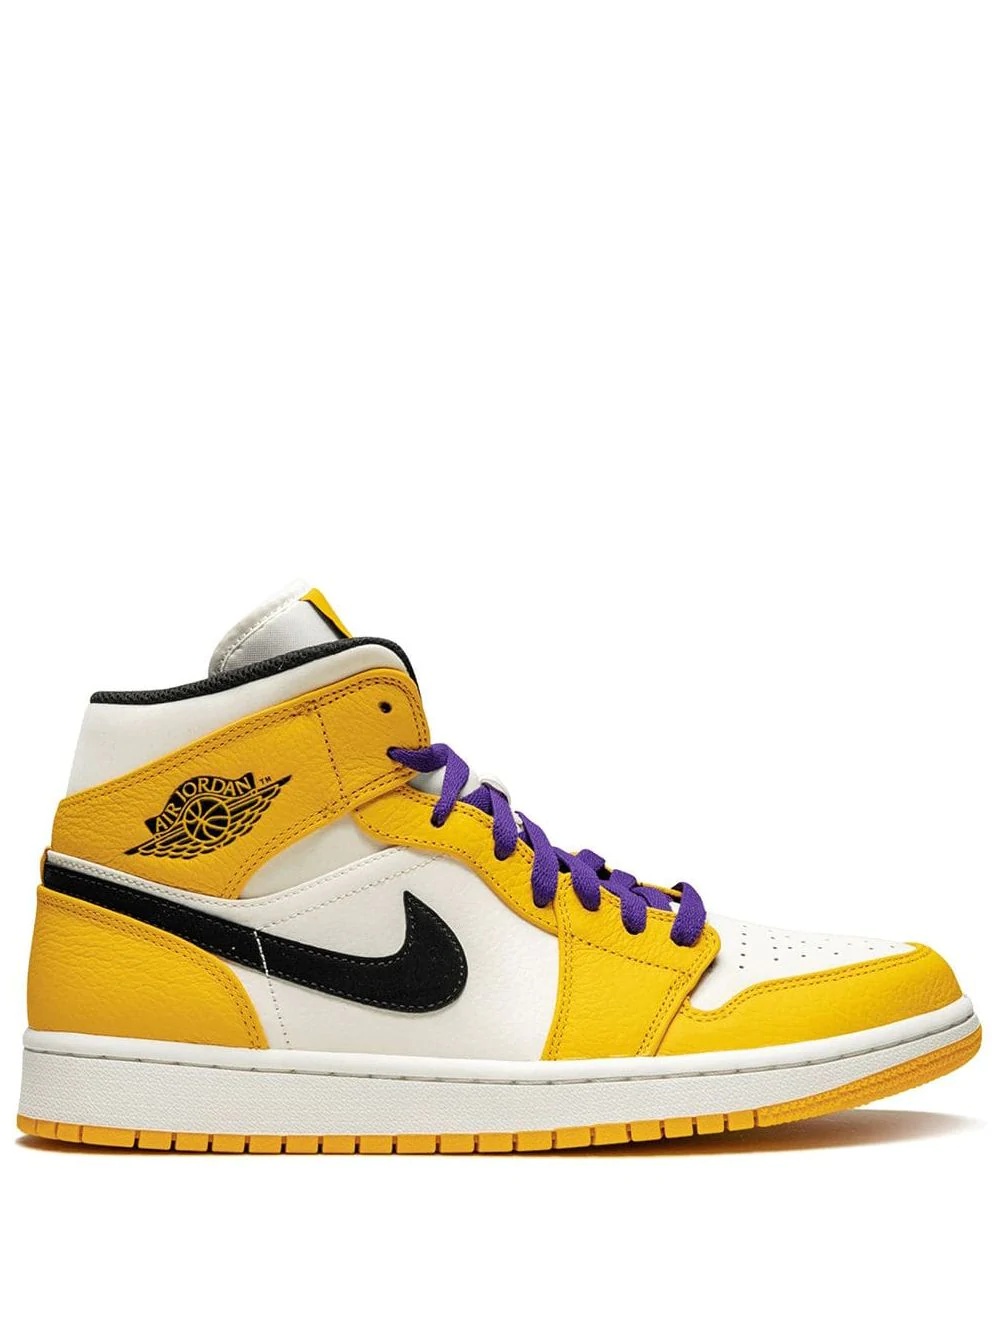 Air Jordan 1 Mid SE "Lakers" sneakers - 1